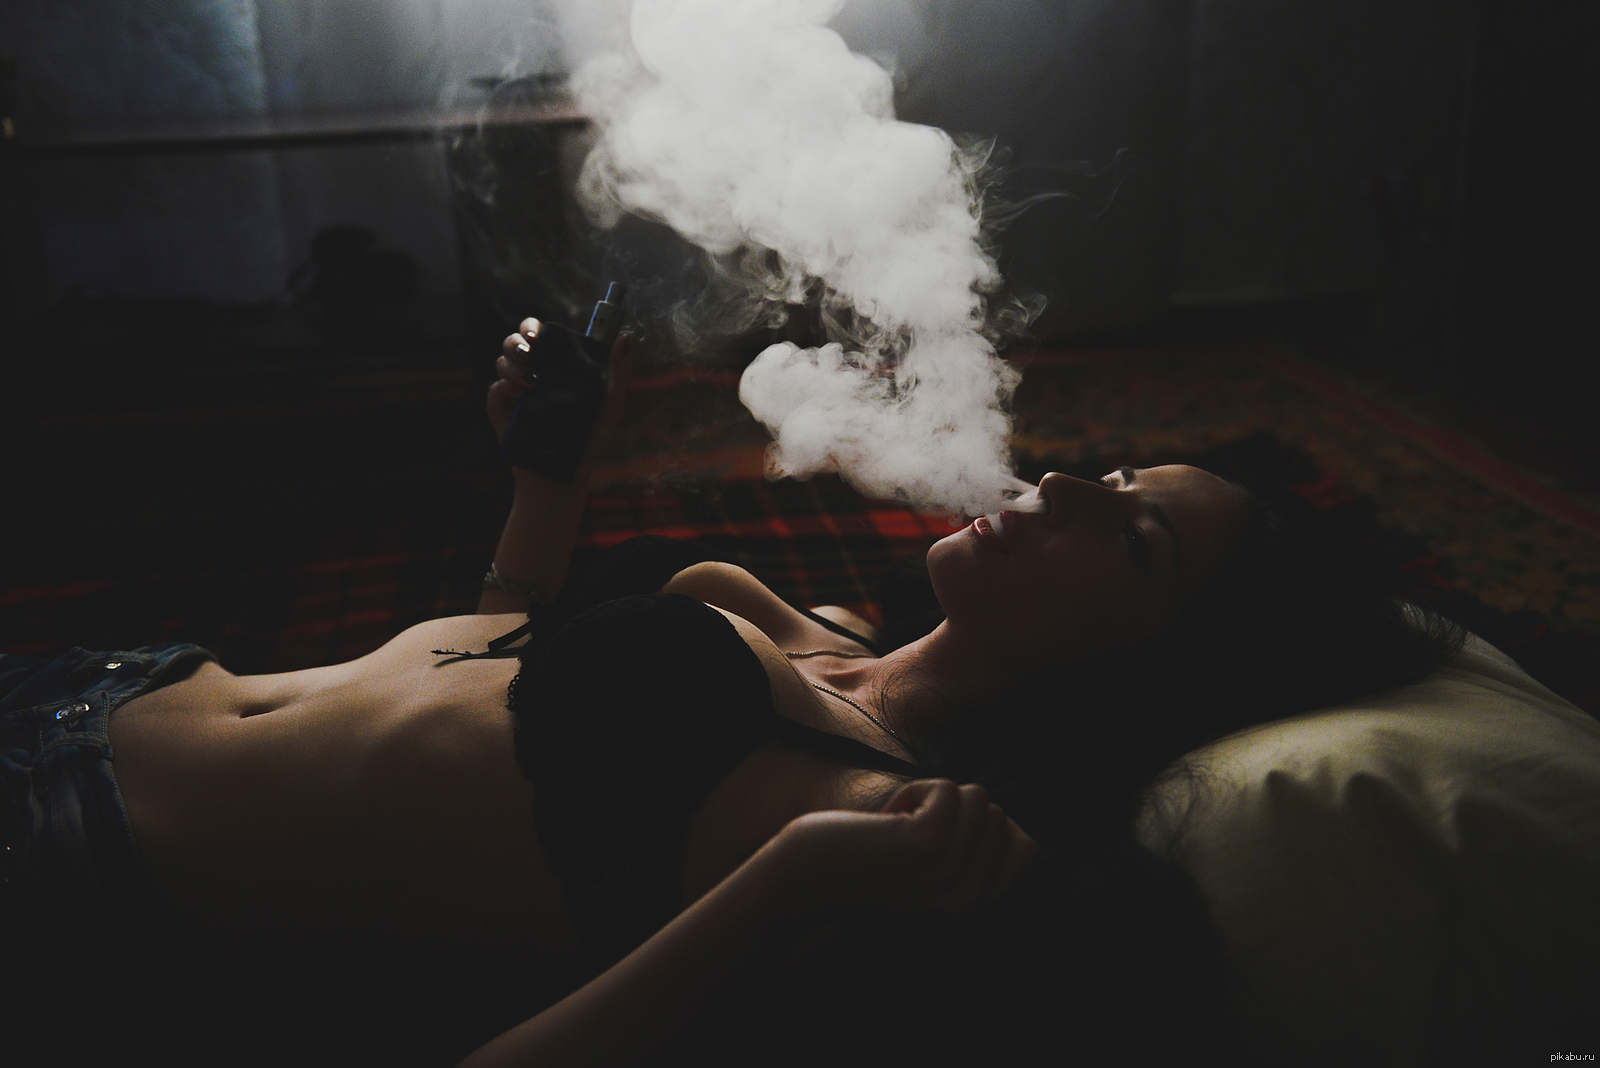 Красивая эротика курящих женских тел  16 фото